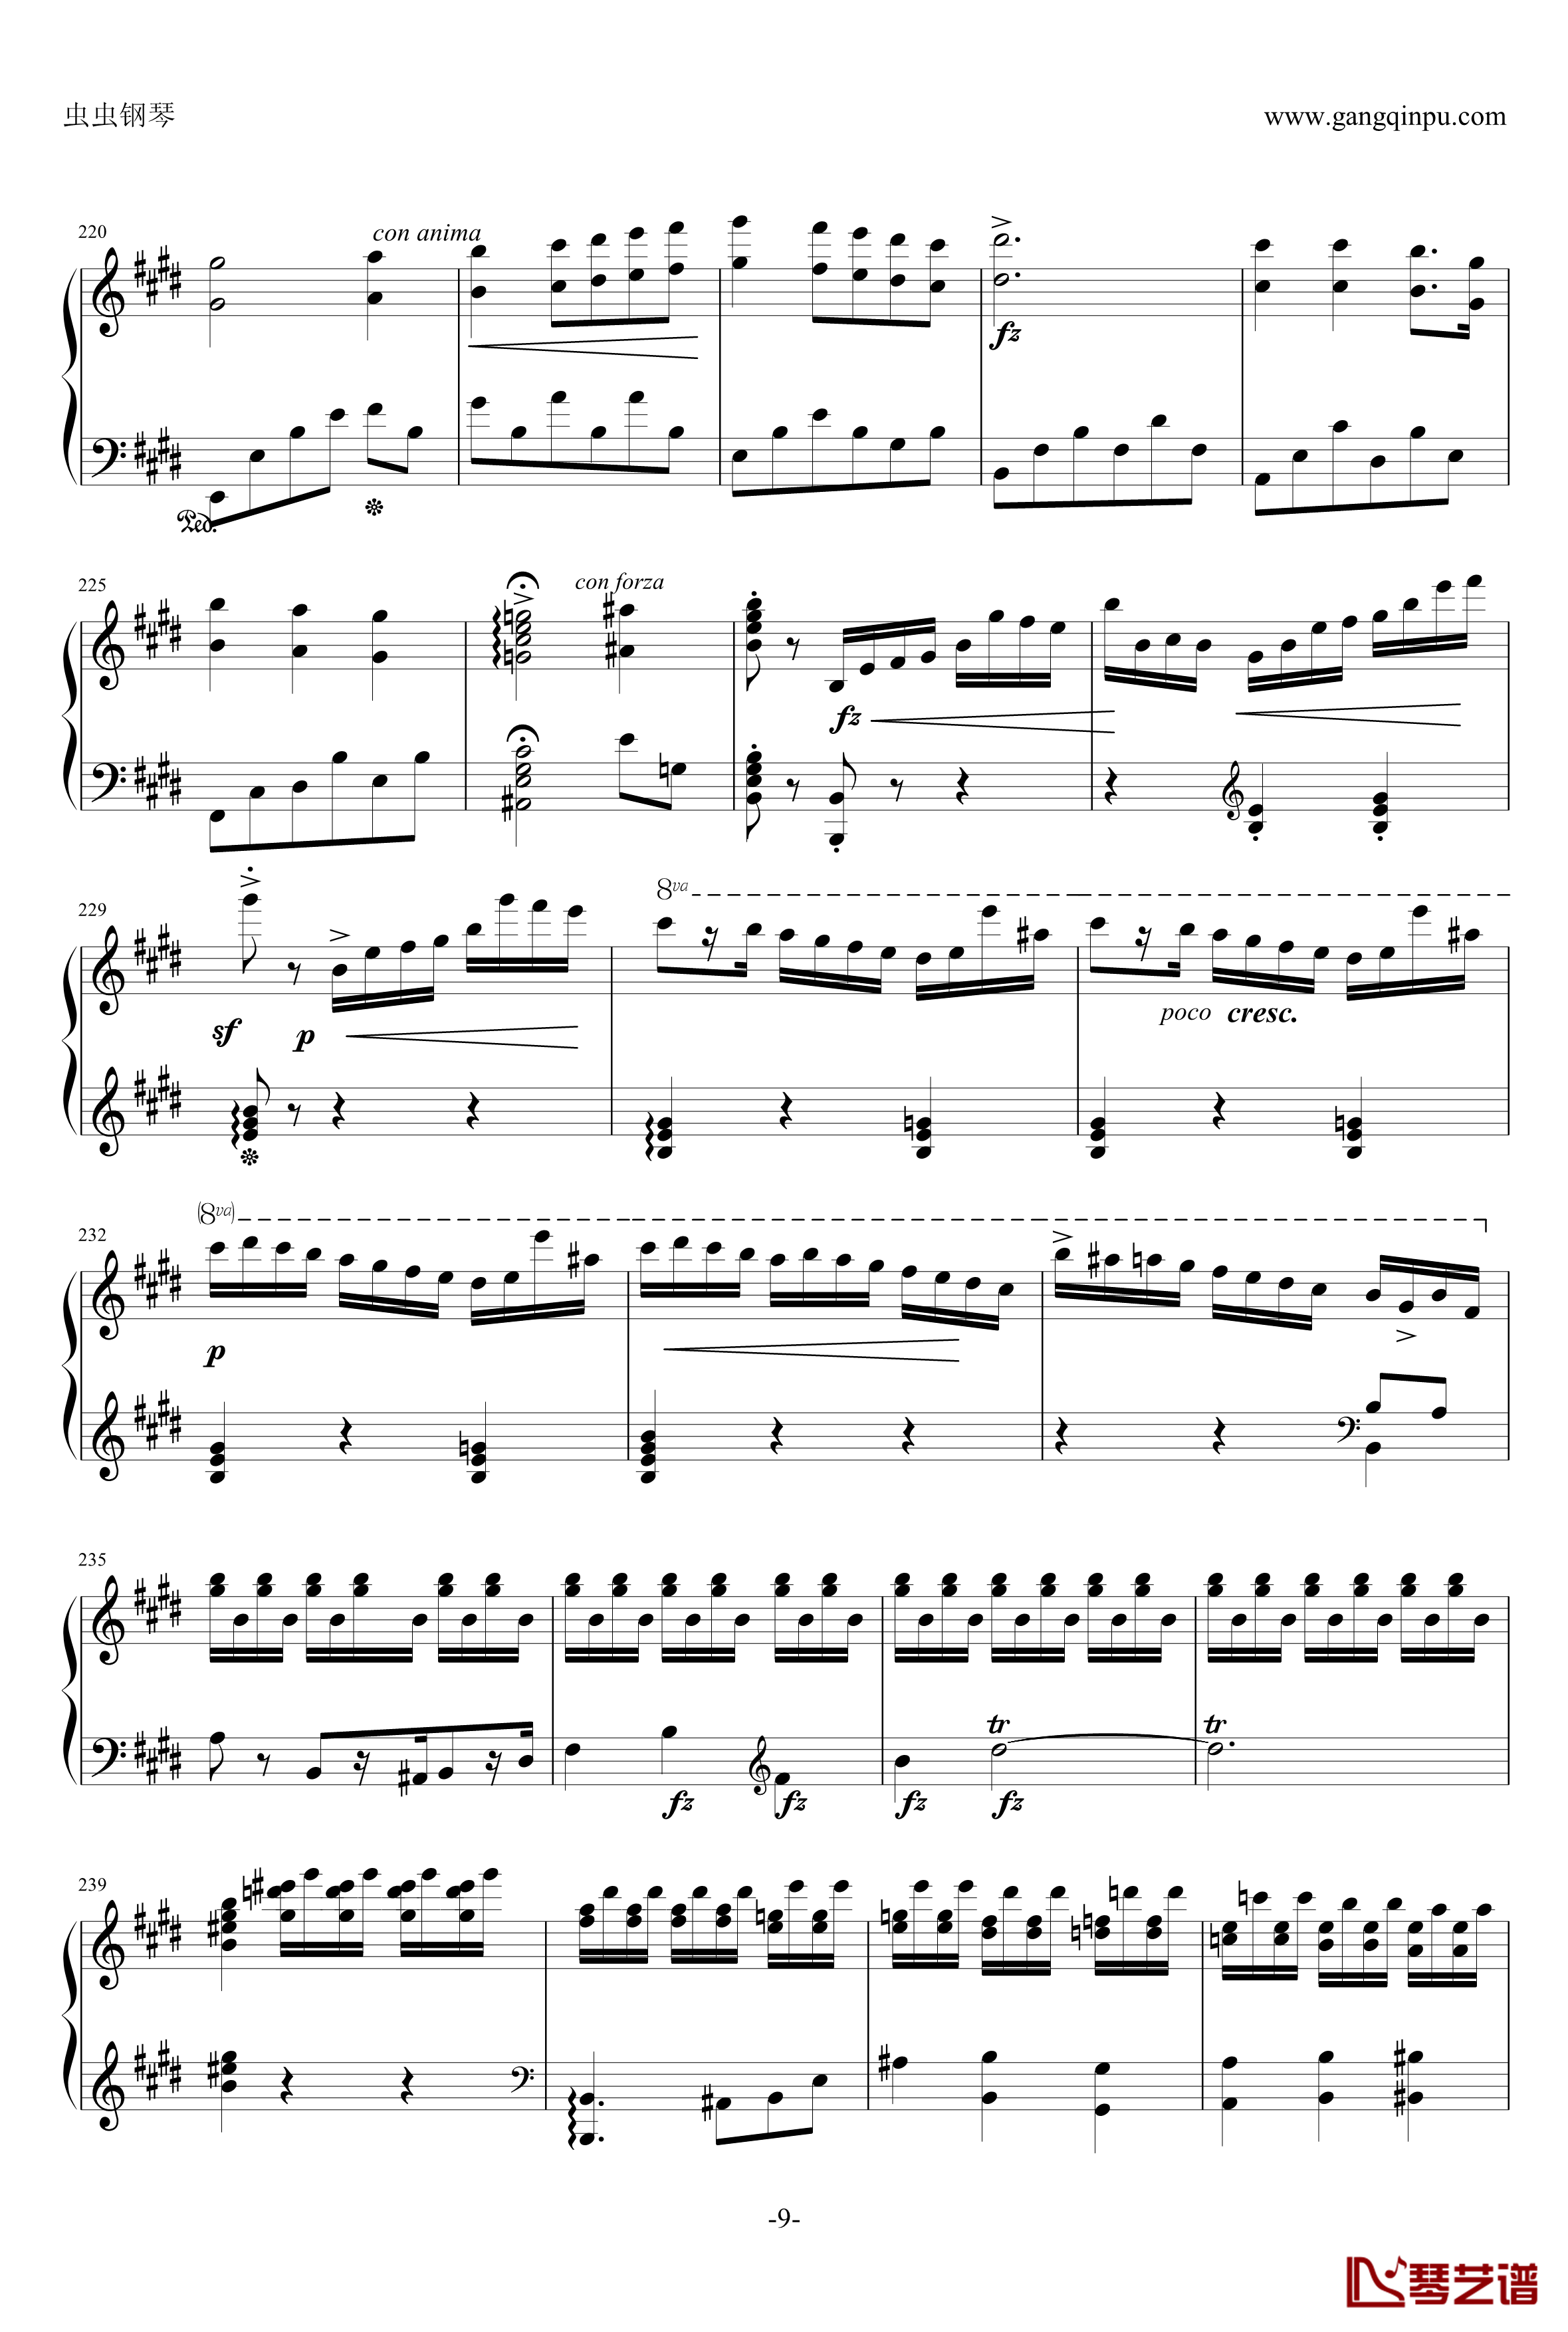 e小调钢琴协奏曲钢琴谱-乐之琴简易钢琴版-肖邦-chopin9